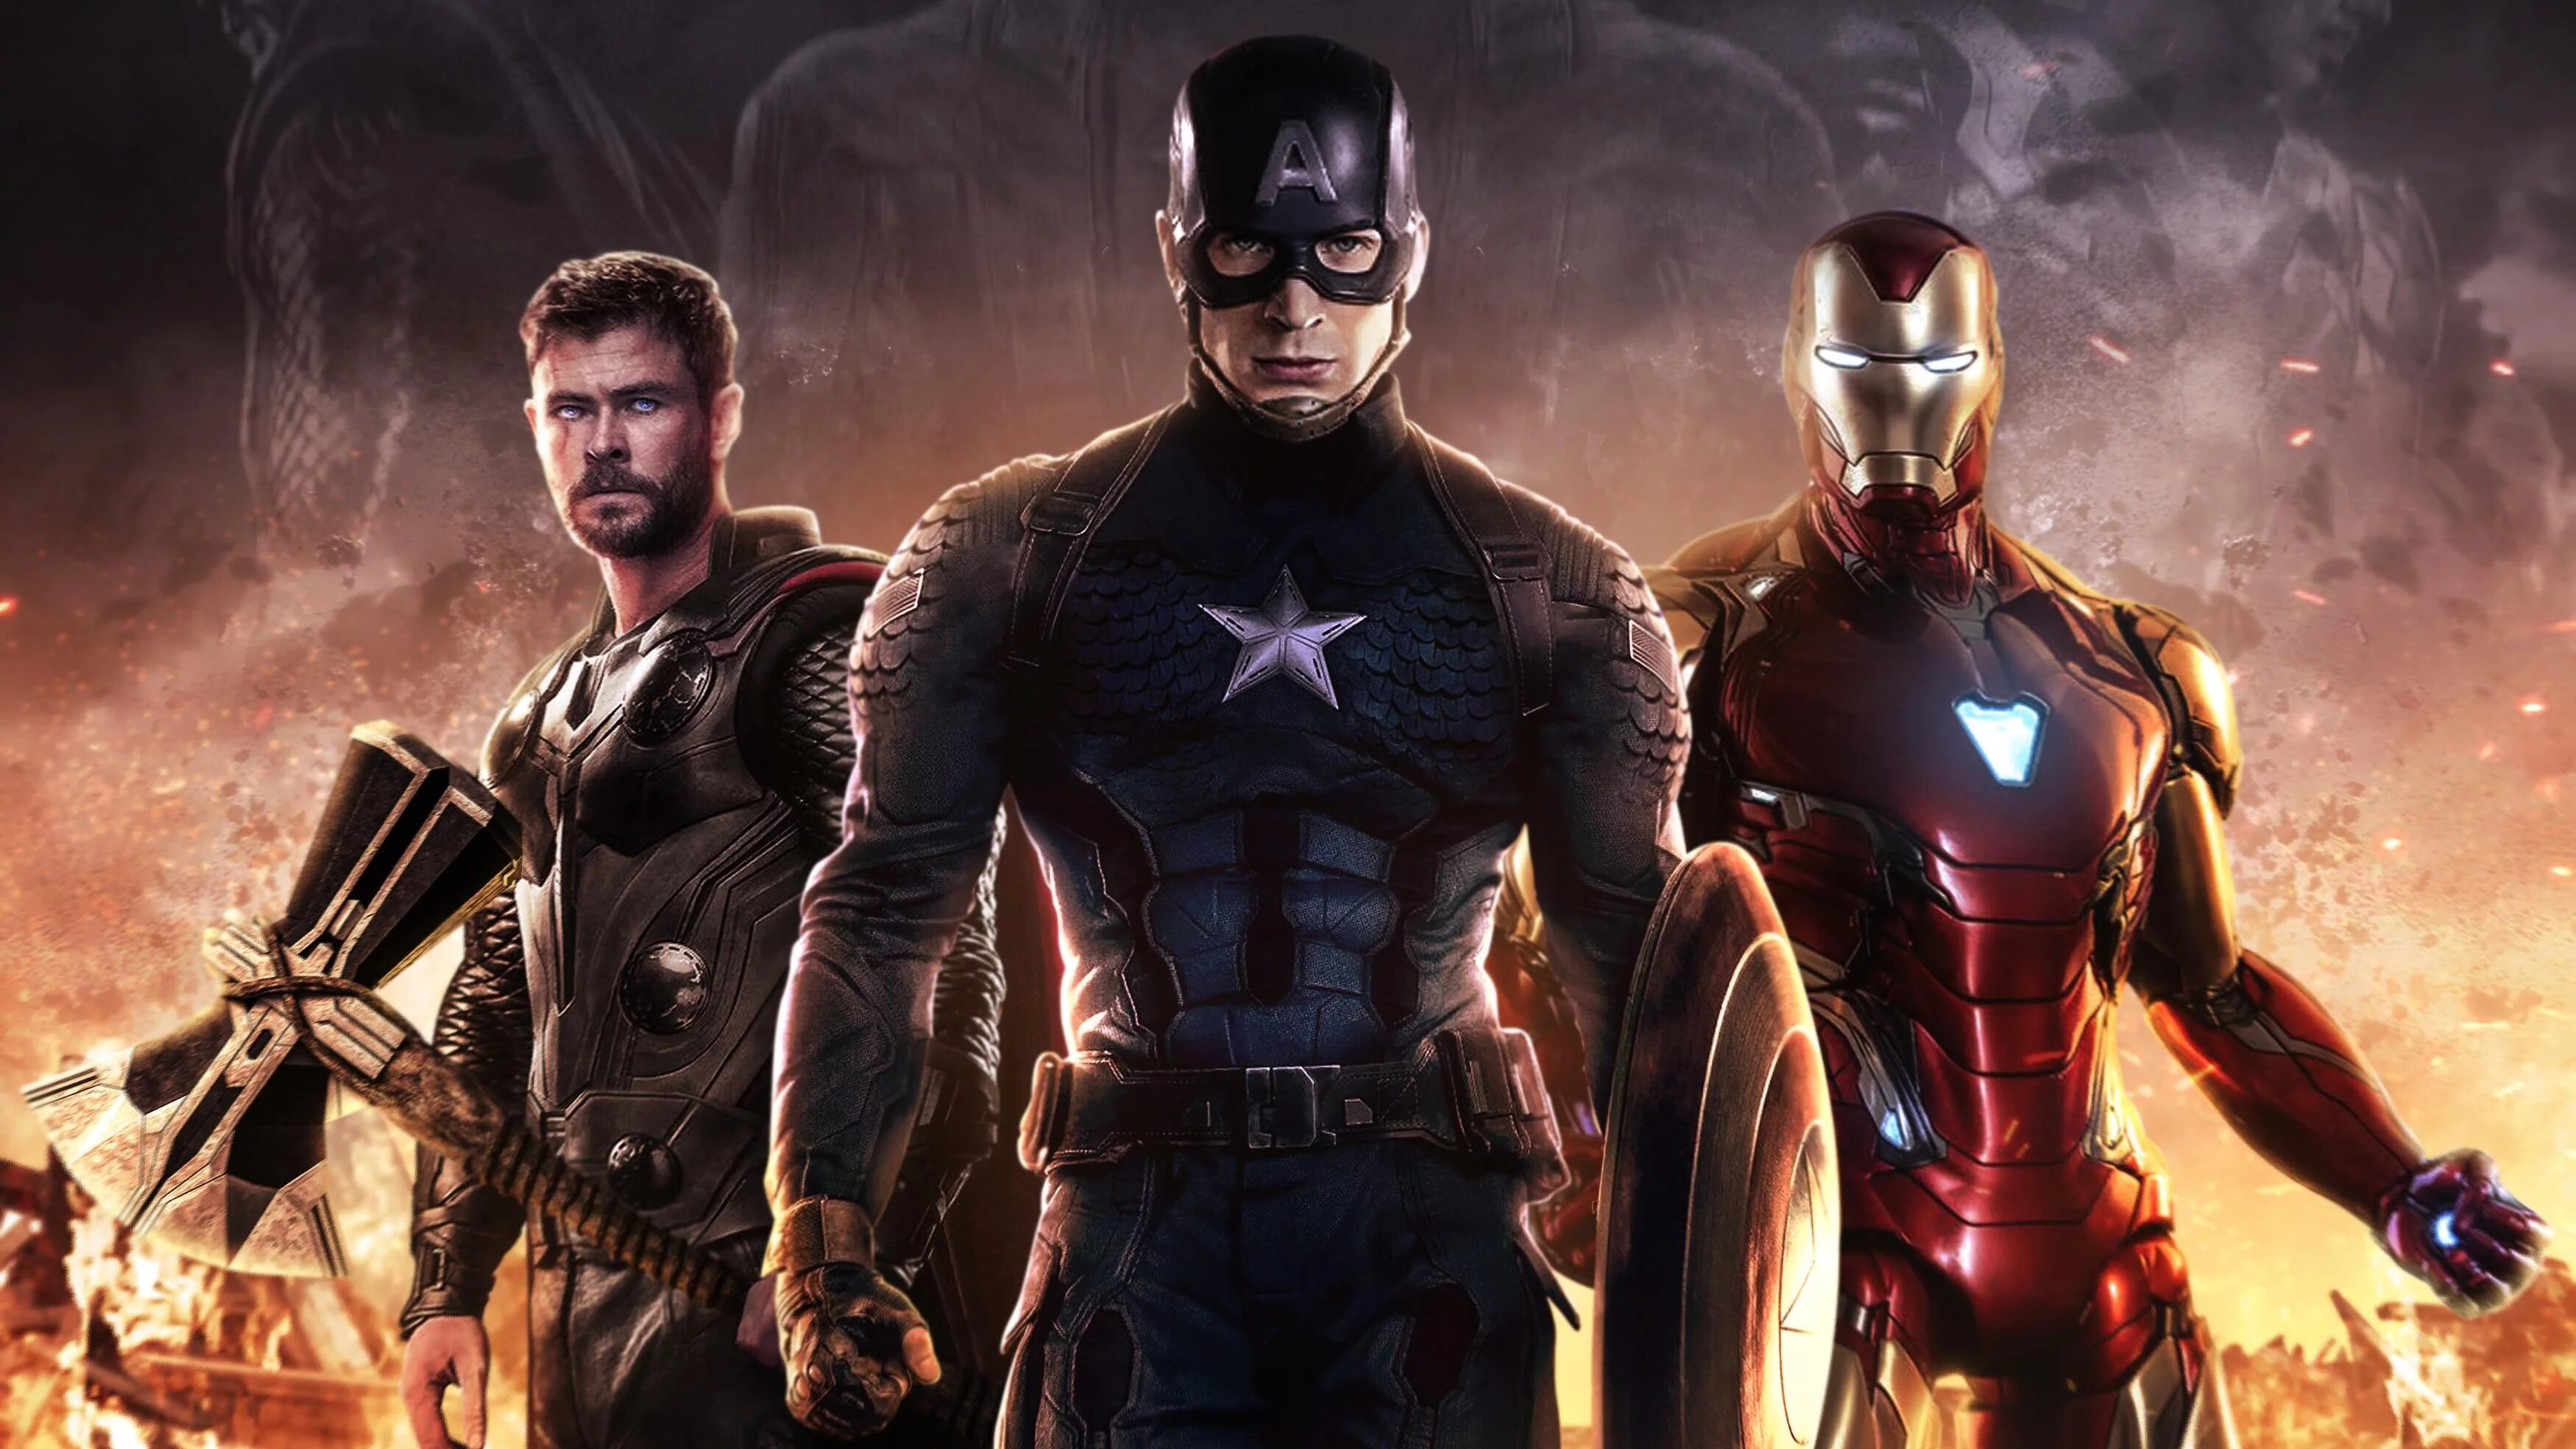 #avengers endgame, #iron man, #captain america